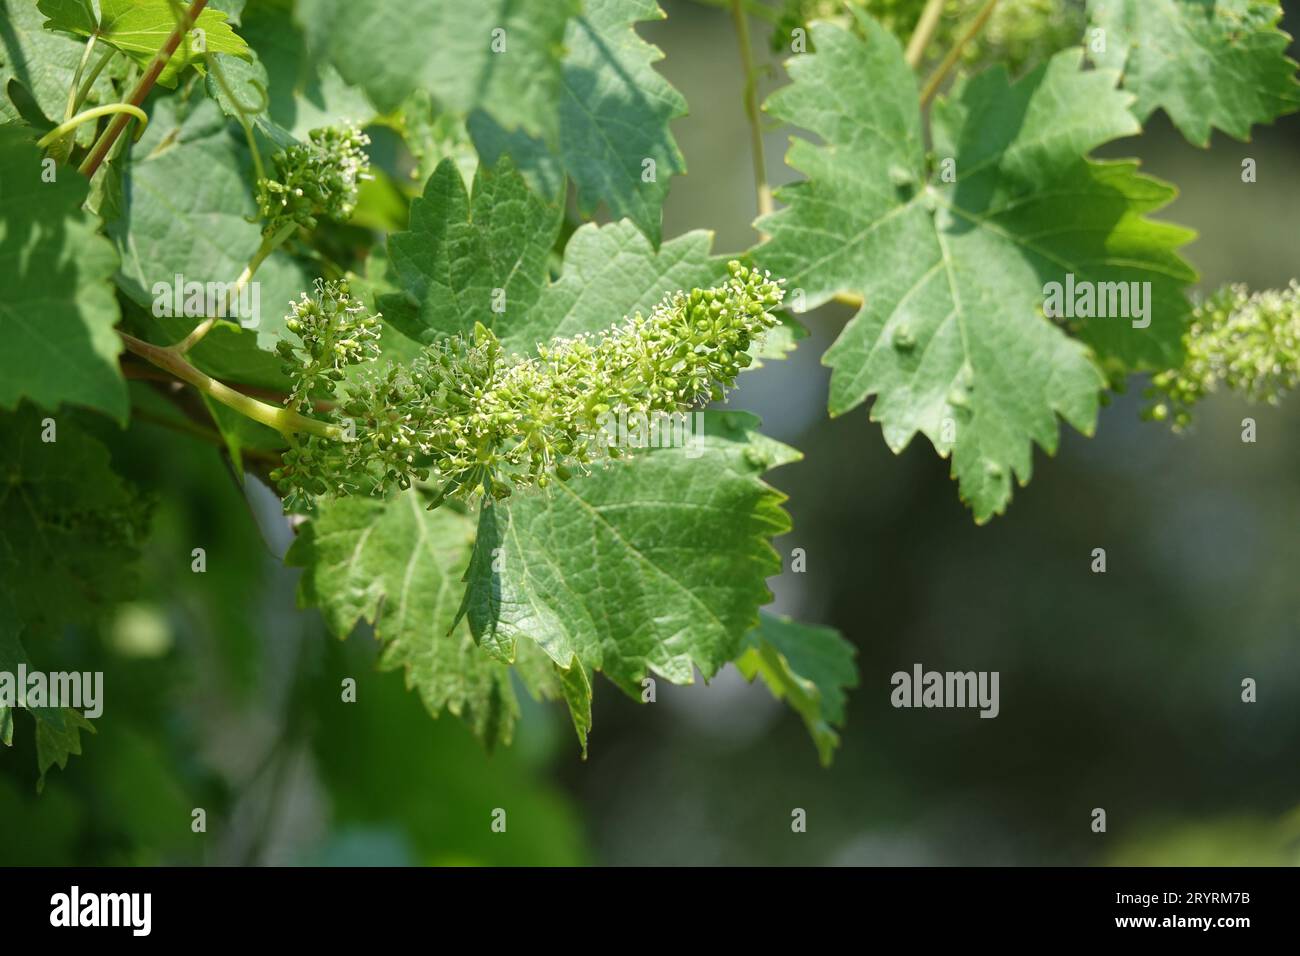 Vitis vinifera, grape vine Stock Photo